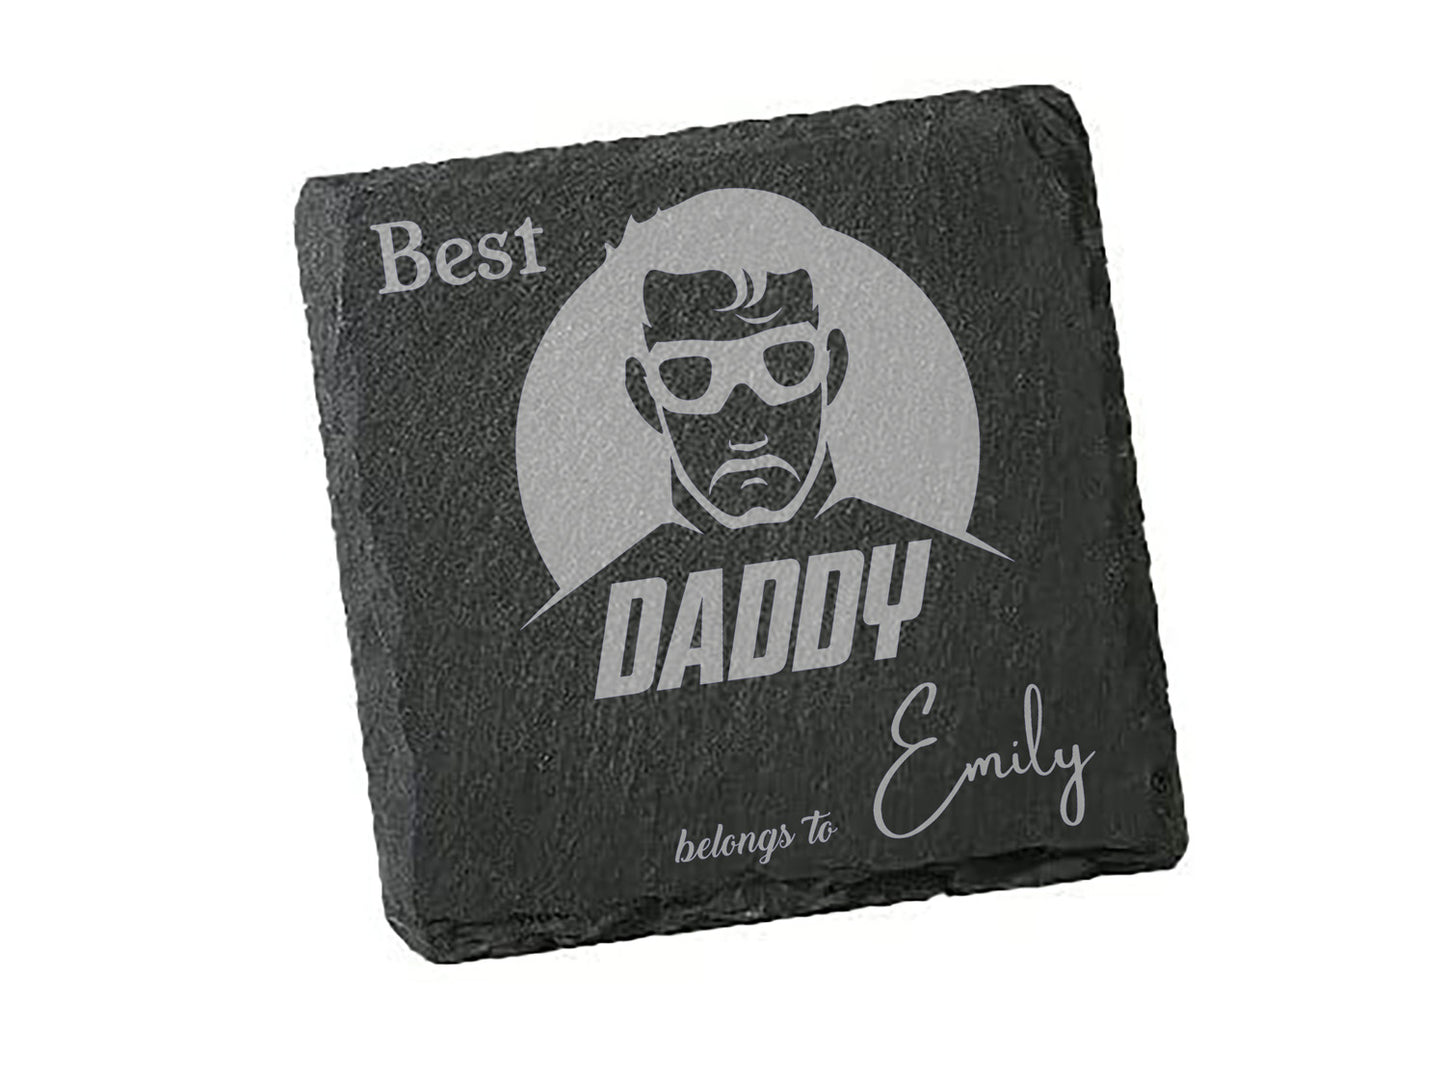 Best Daddy Superhero belongs to, Personalised Coaster for Dad